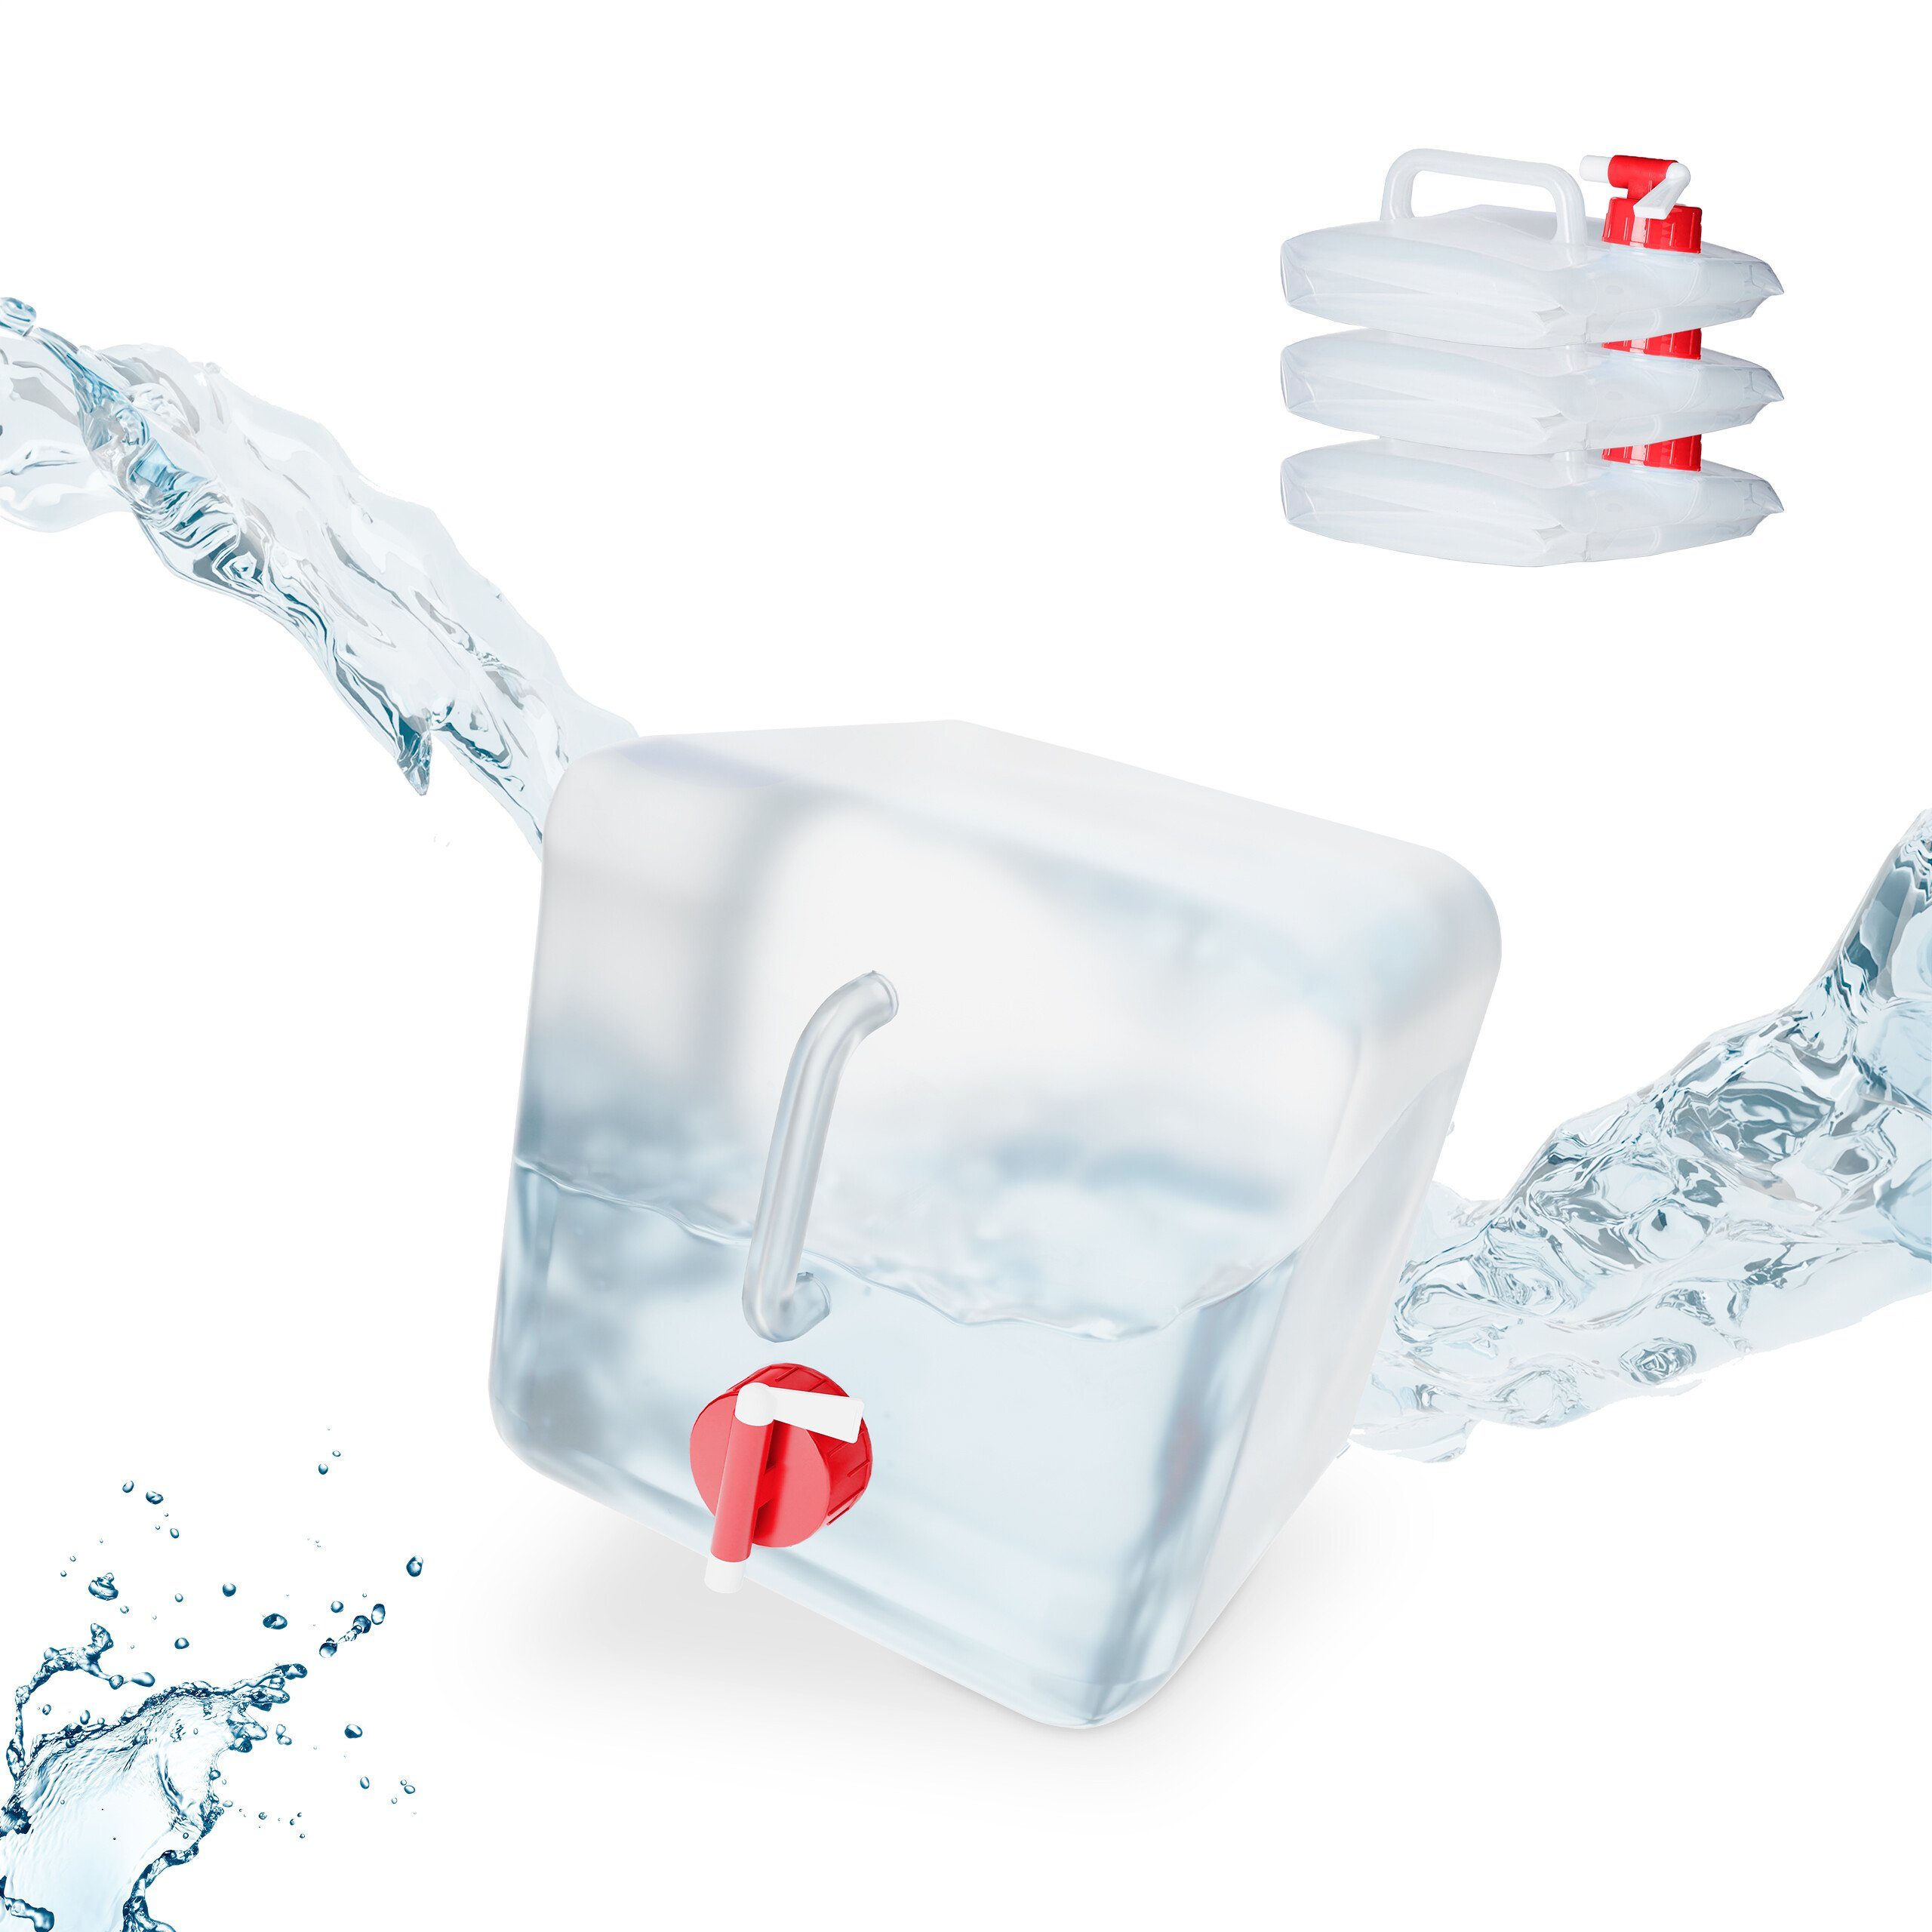 HTI-Living Wasser-Kanister mit Zapfhahn online kaufen bei Netto